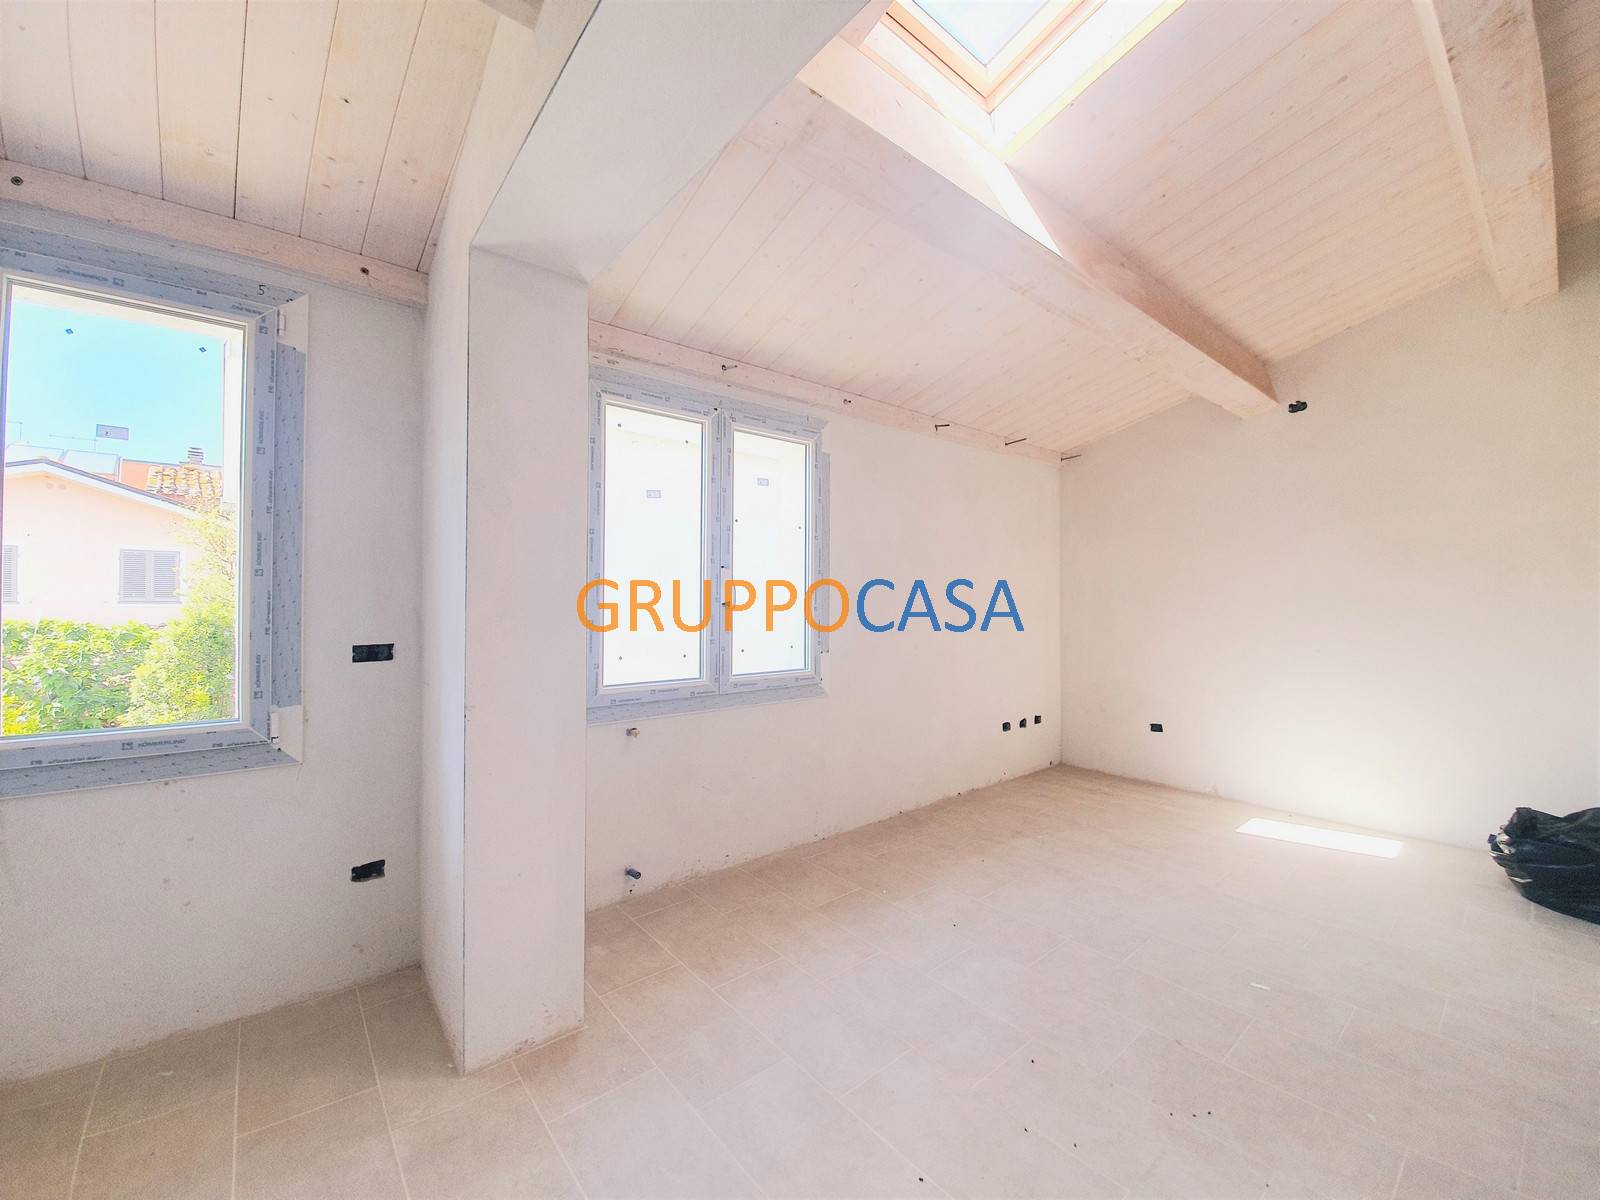 Appartamento in vendita a Castelfranco di Sotto, 3 locali, zona tano, prezzo € 99.000 | PortaleAgenzieImmobiliari.it